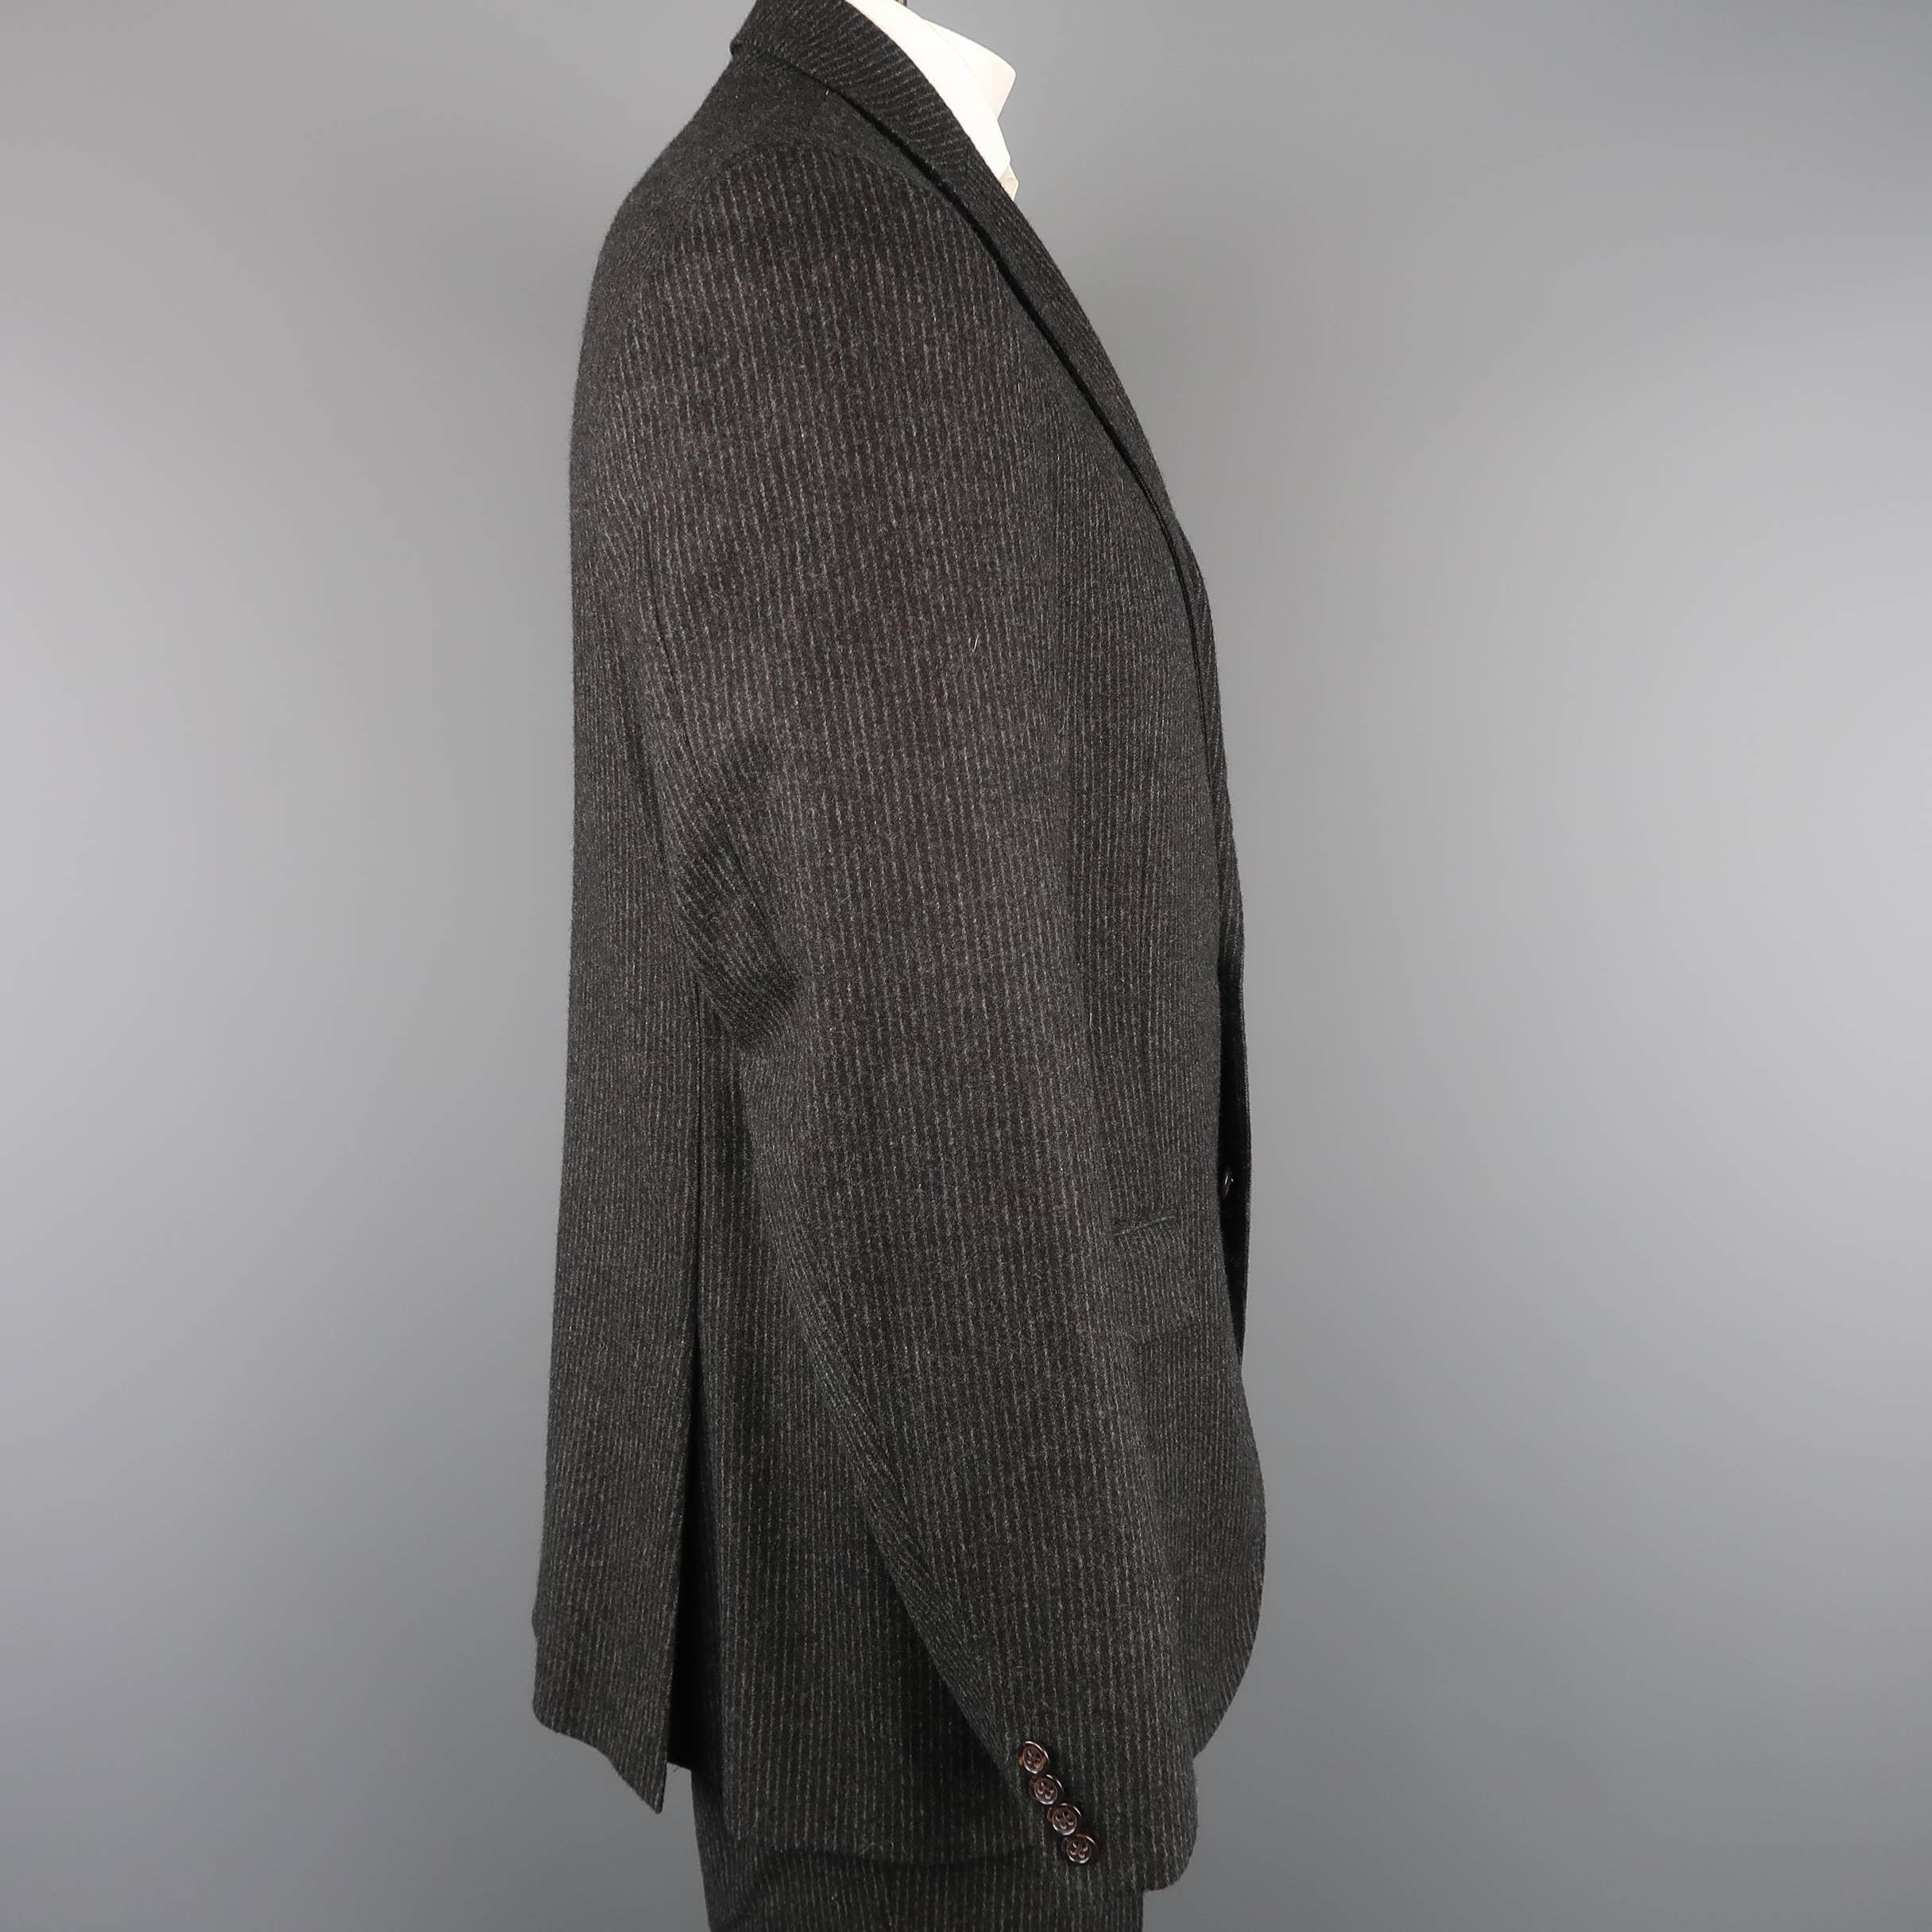 Black Ralph Lauren Men's Charcoal Pinstripe Wool Cashmere Notch Lapel Suit